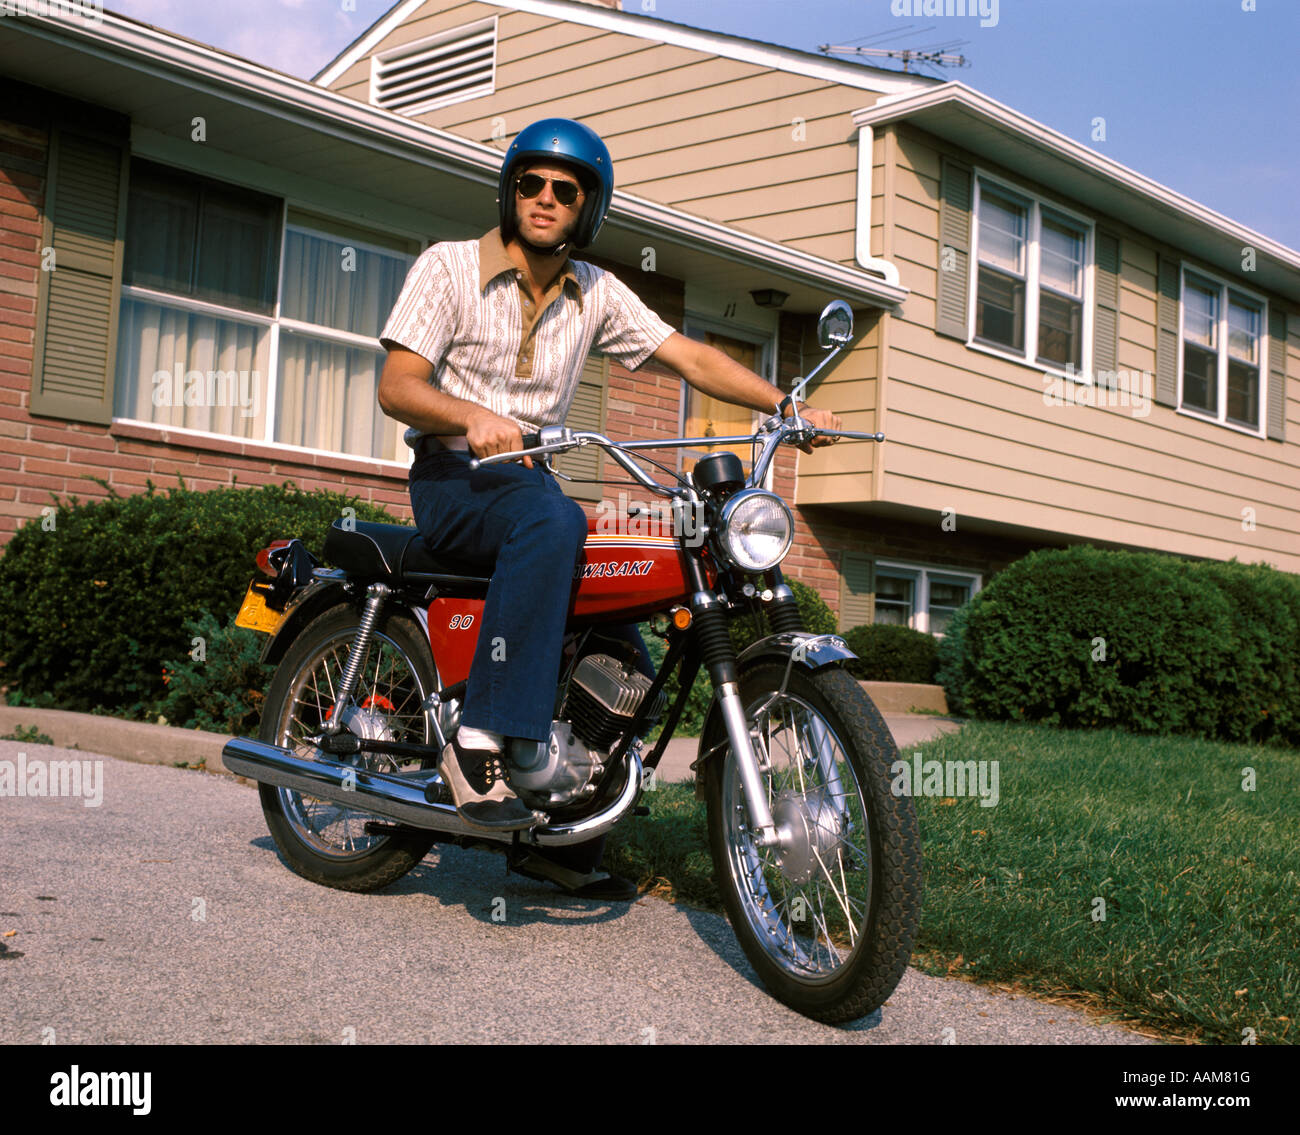 1970 1970S JUNGER MANN BLAUEN HELM SITZT AUF DEM MOTORRAD IN EINFAHRT  VORSTADTHAUS BIKE MOTORRÄDER MÄNNER Stockfotografie - Alamy